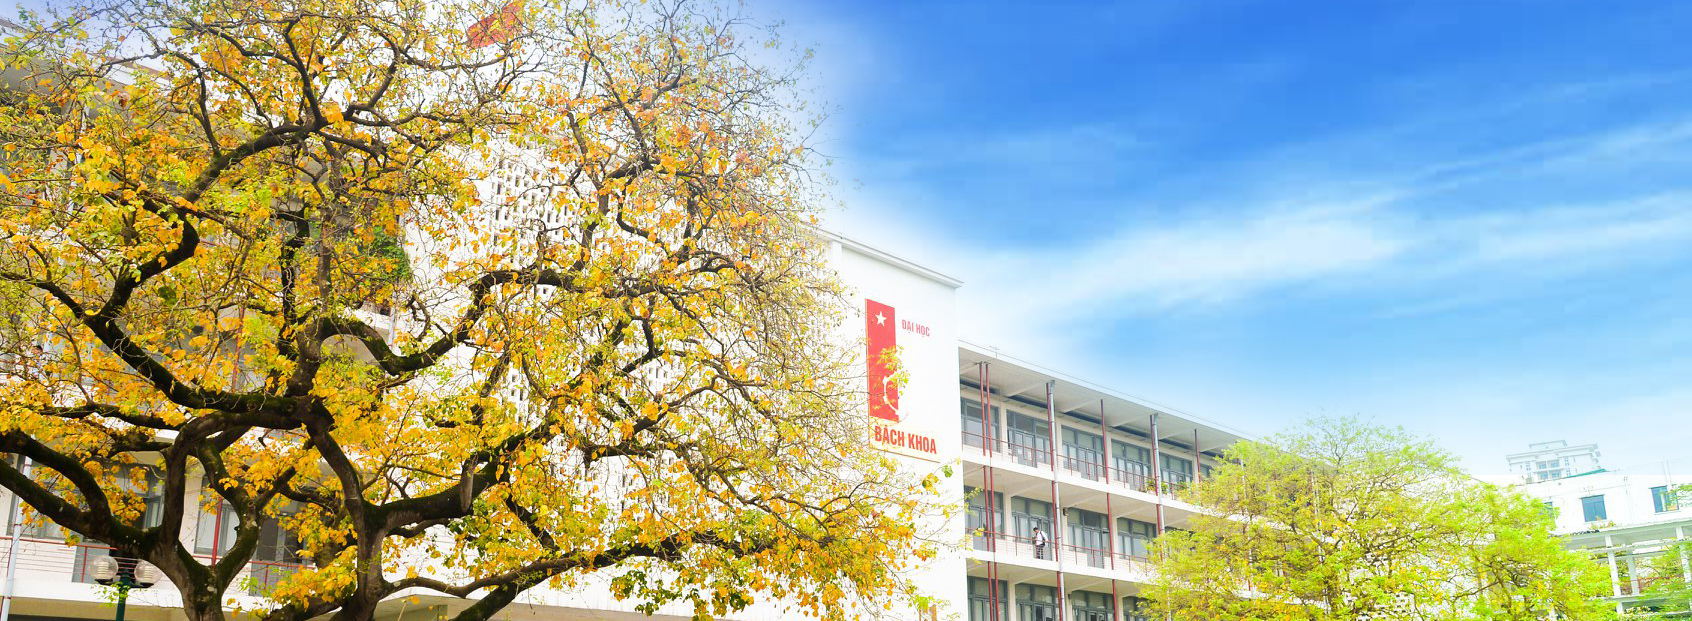 ĐHBK Hà Nội được xếp hạng TOP 300 trường ĐH tốt nhất châu Á năm 2020 bởi Times Higher Education